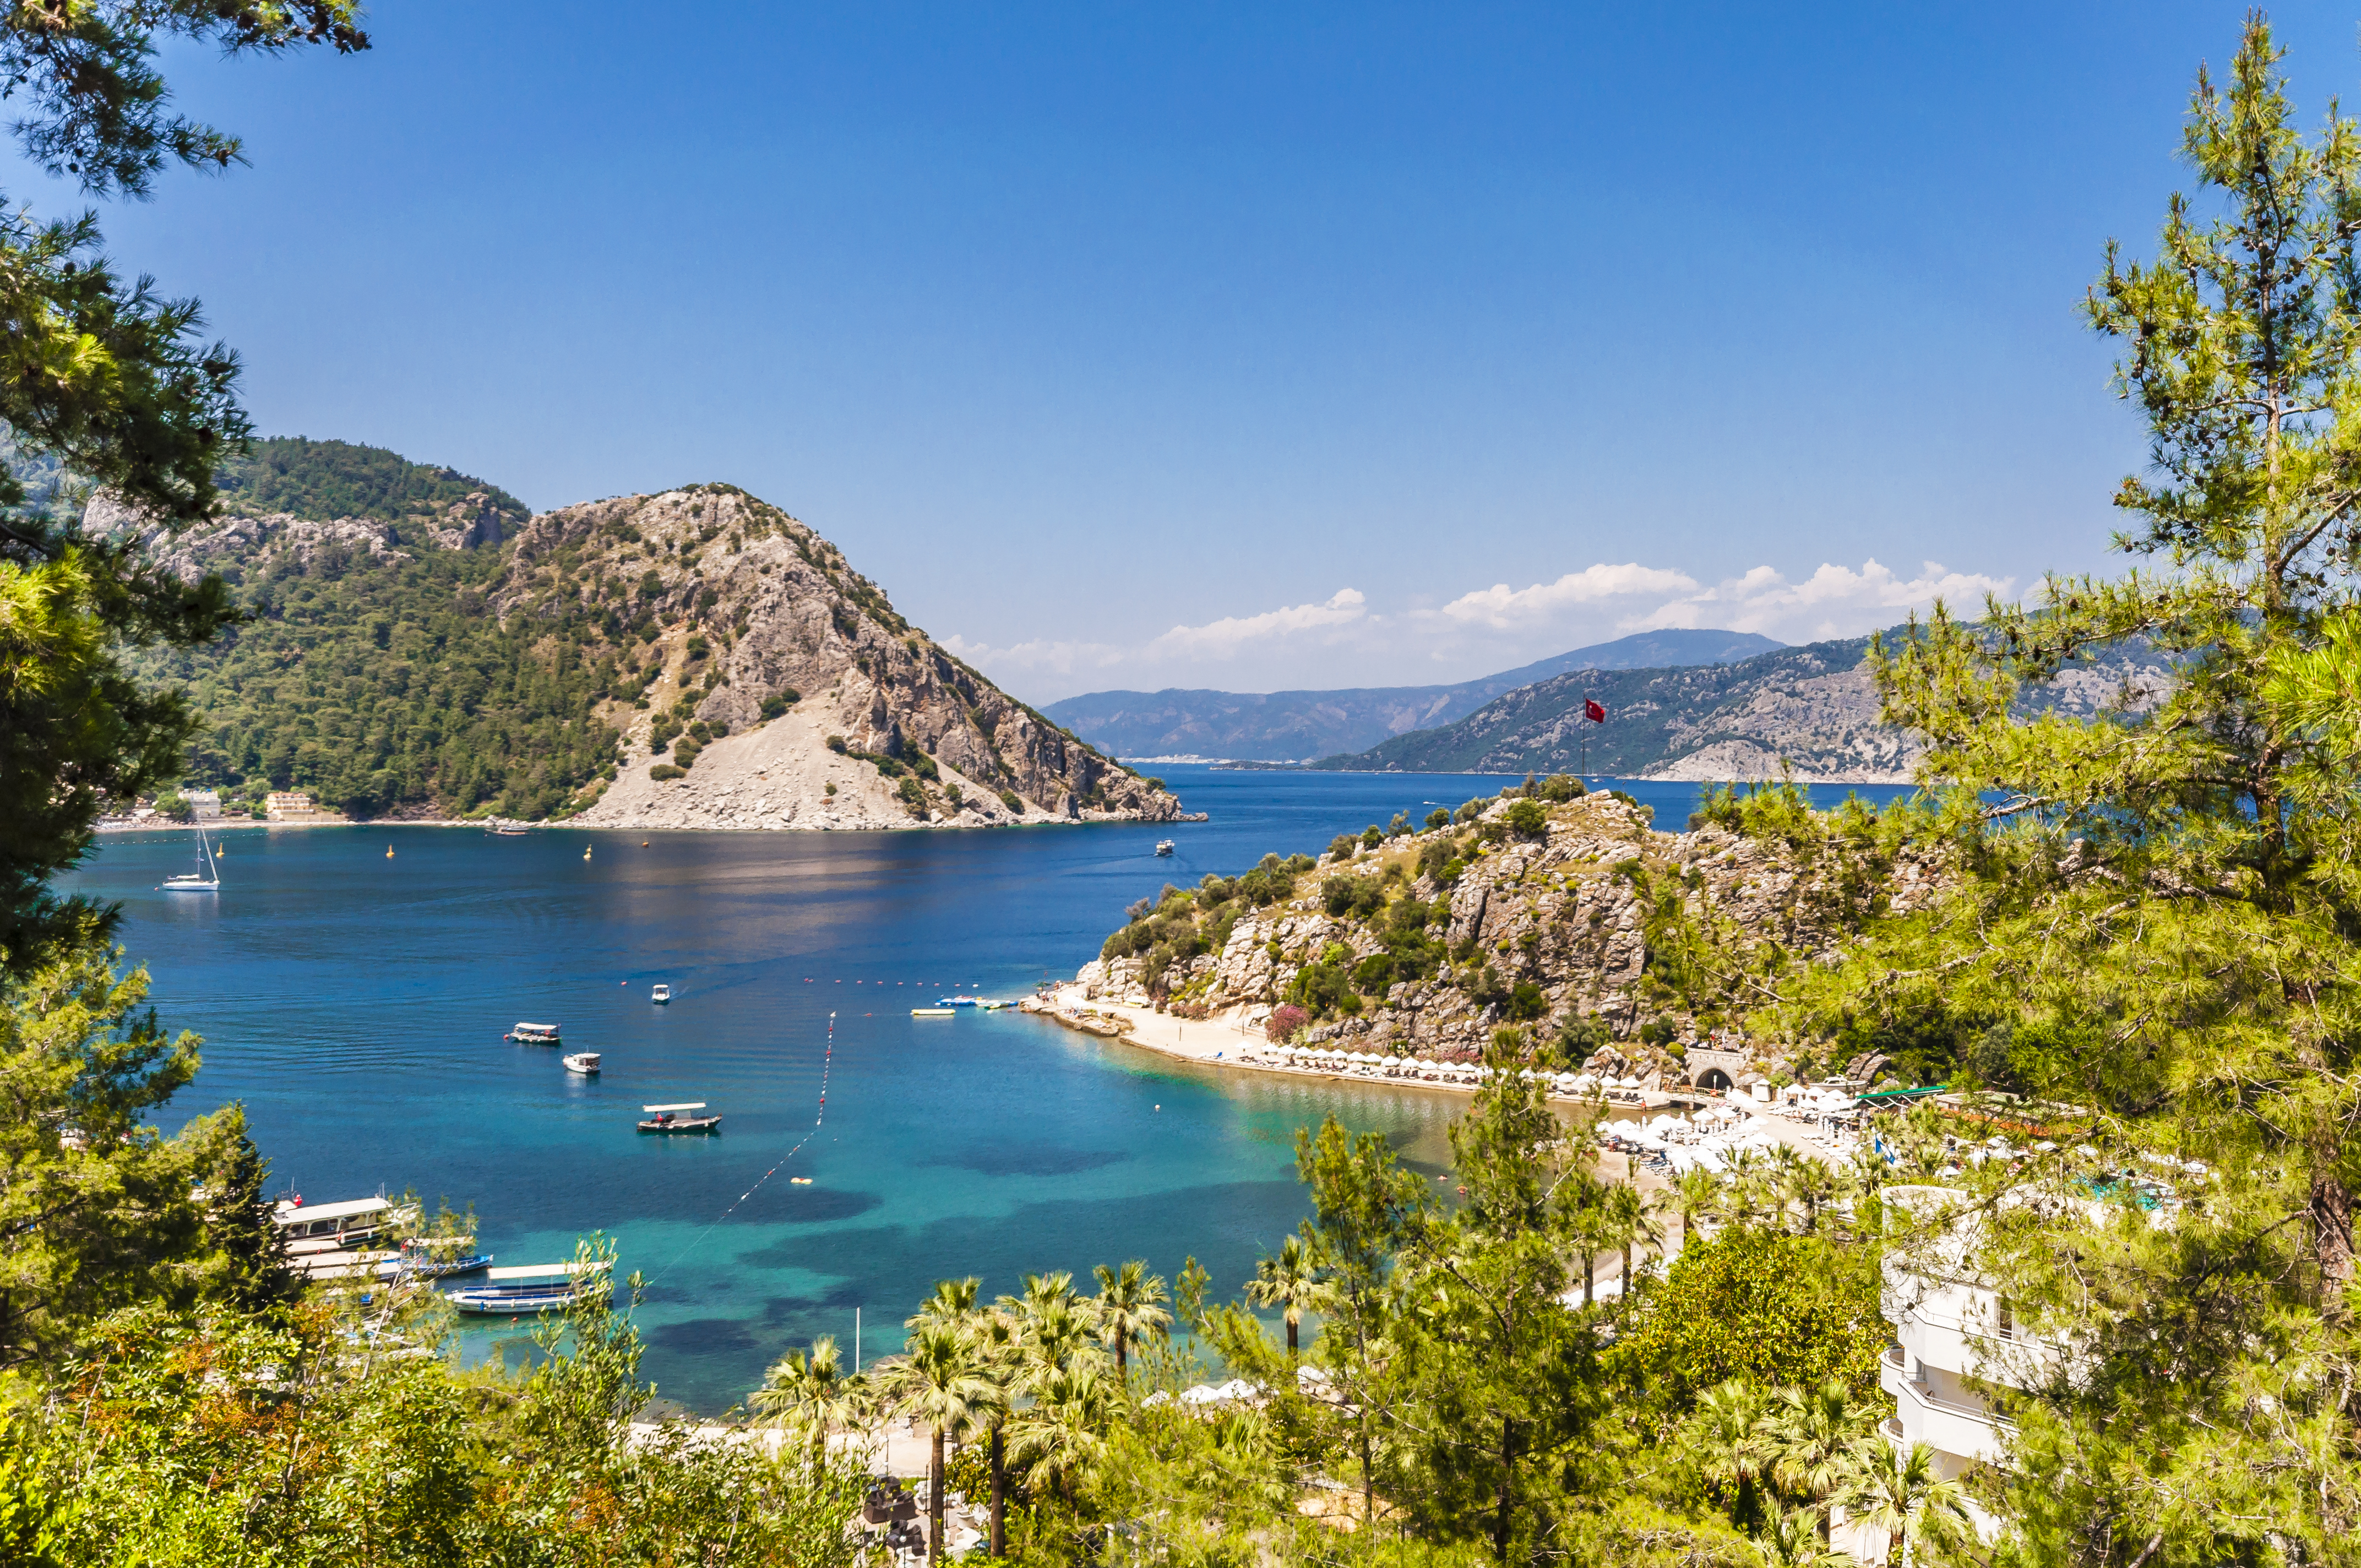 Marmaris ist einer der beliebtesten Urlaubsorte des Landes und wird sogar als der bezeichnet "Monaco der Türkei" von einigen Fans